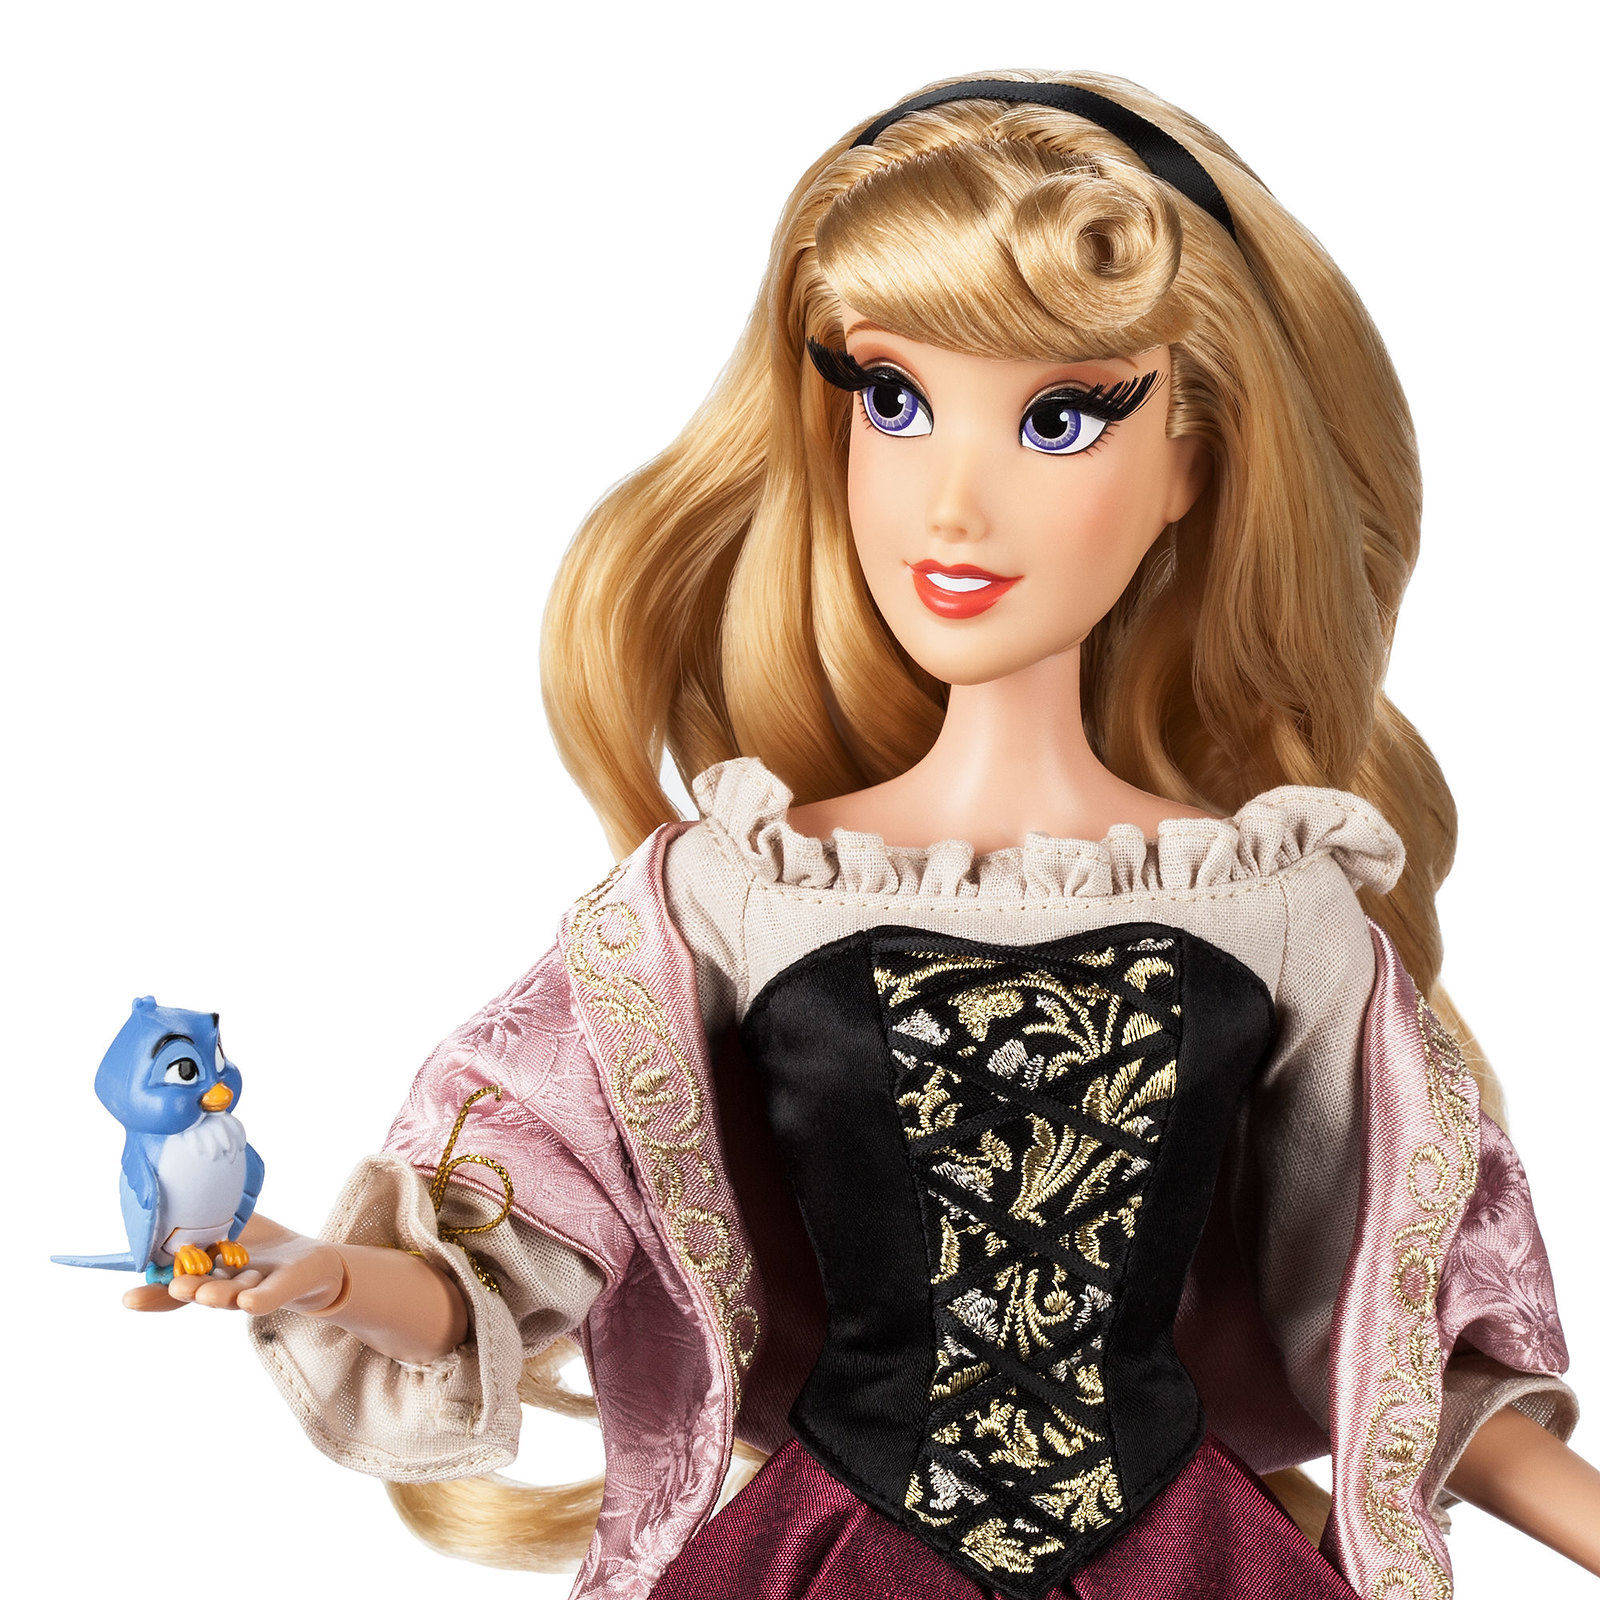 Disney Limited Edition Dolls, Disney Dolls Wiki